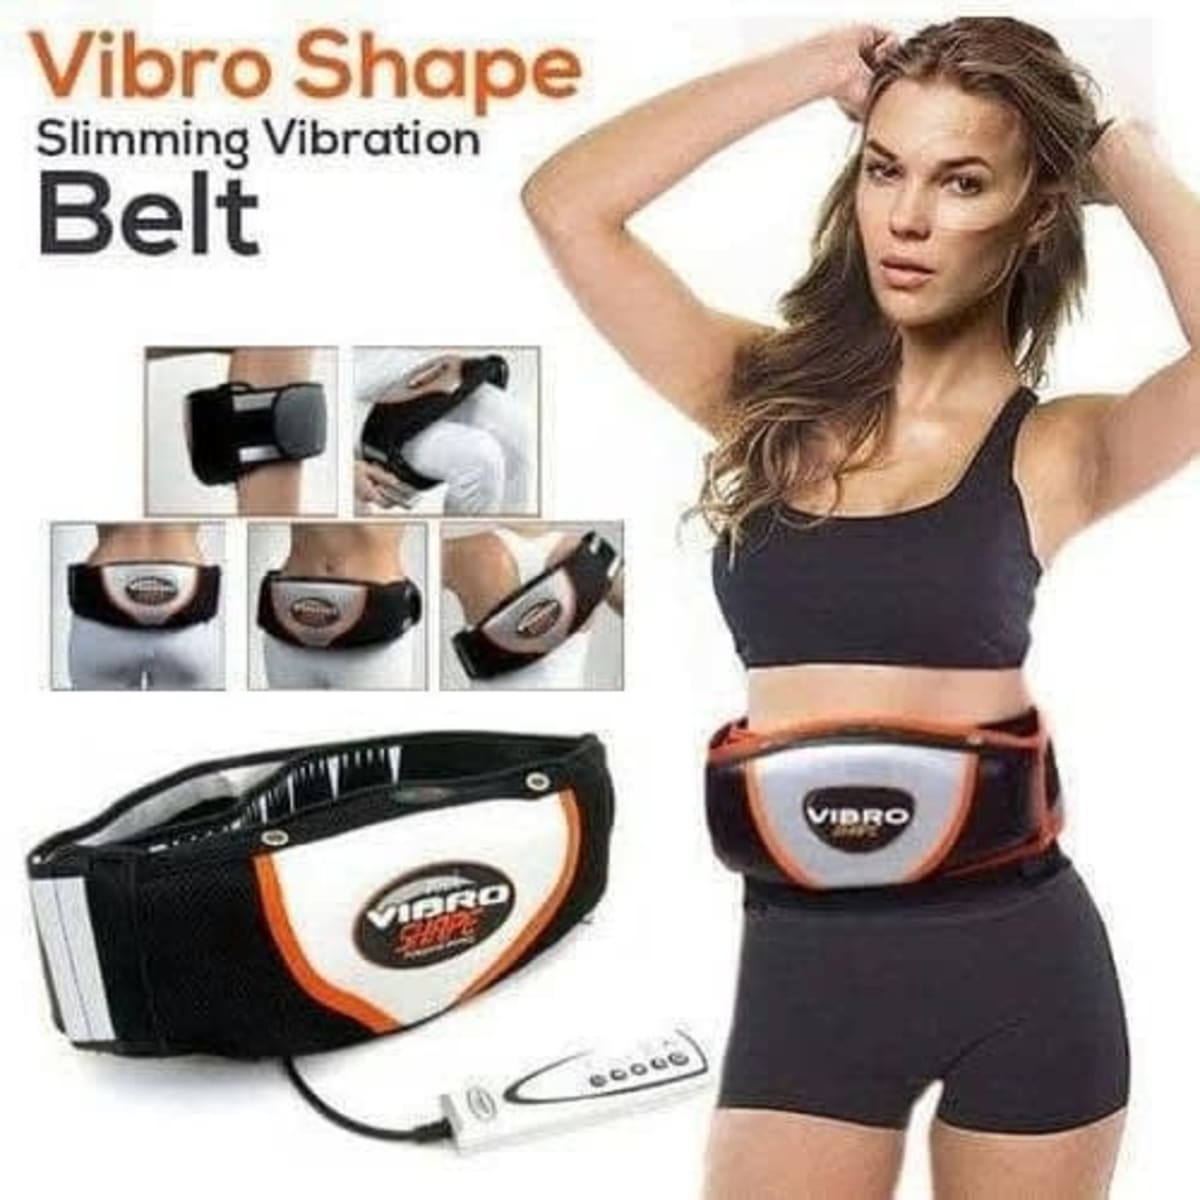 Vibro Shape Vibration Slimming Belt